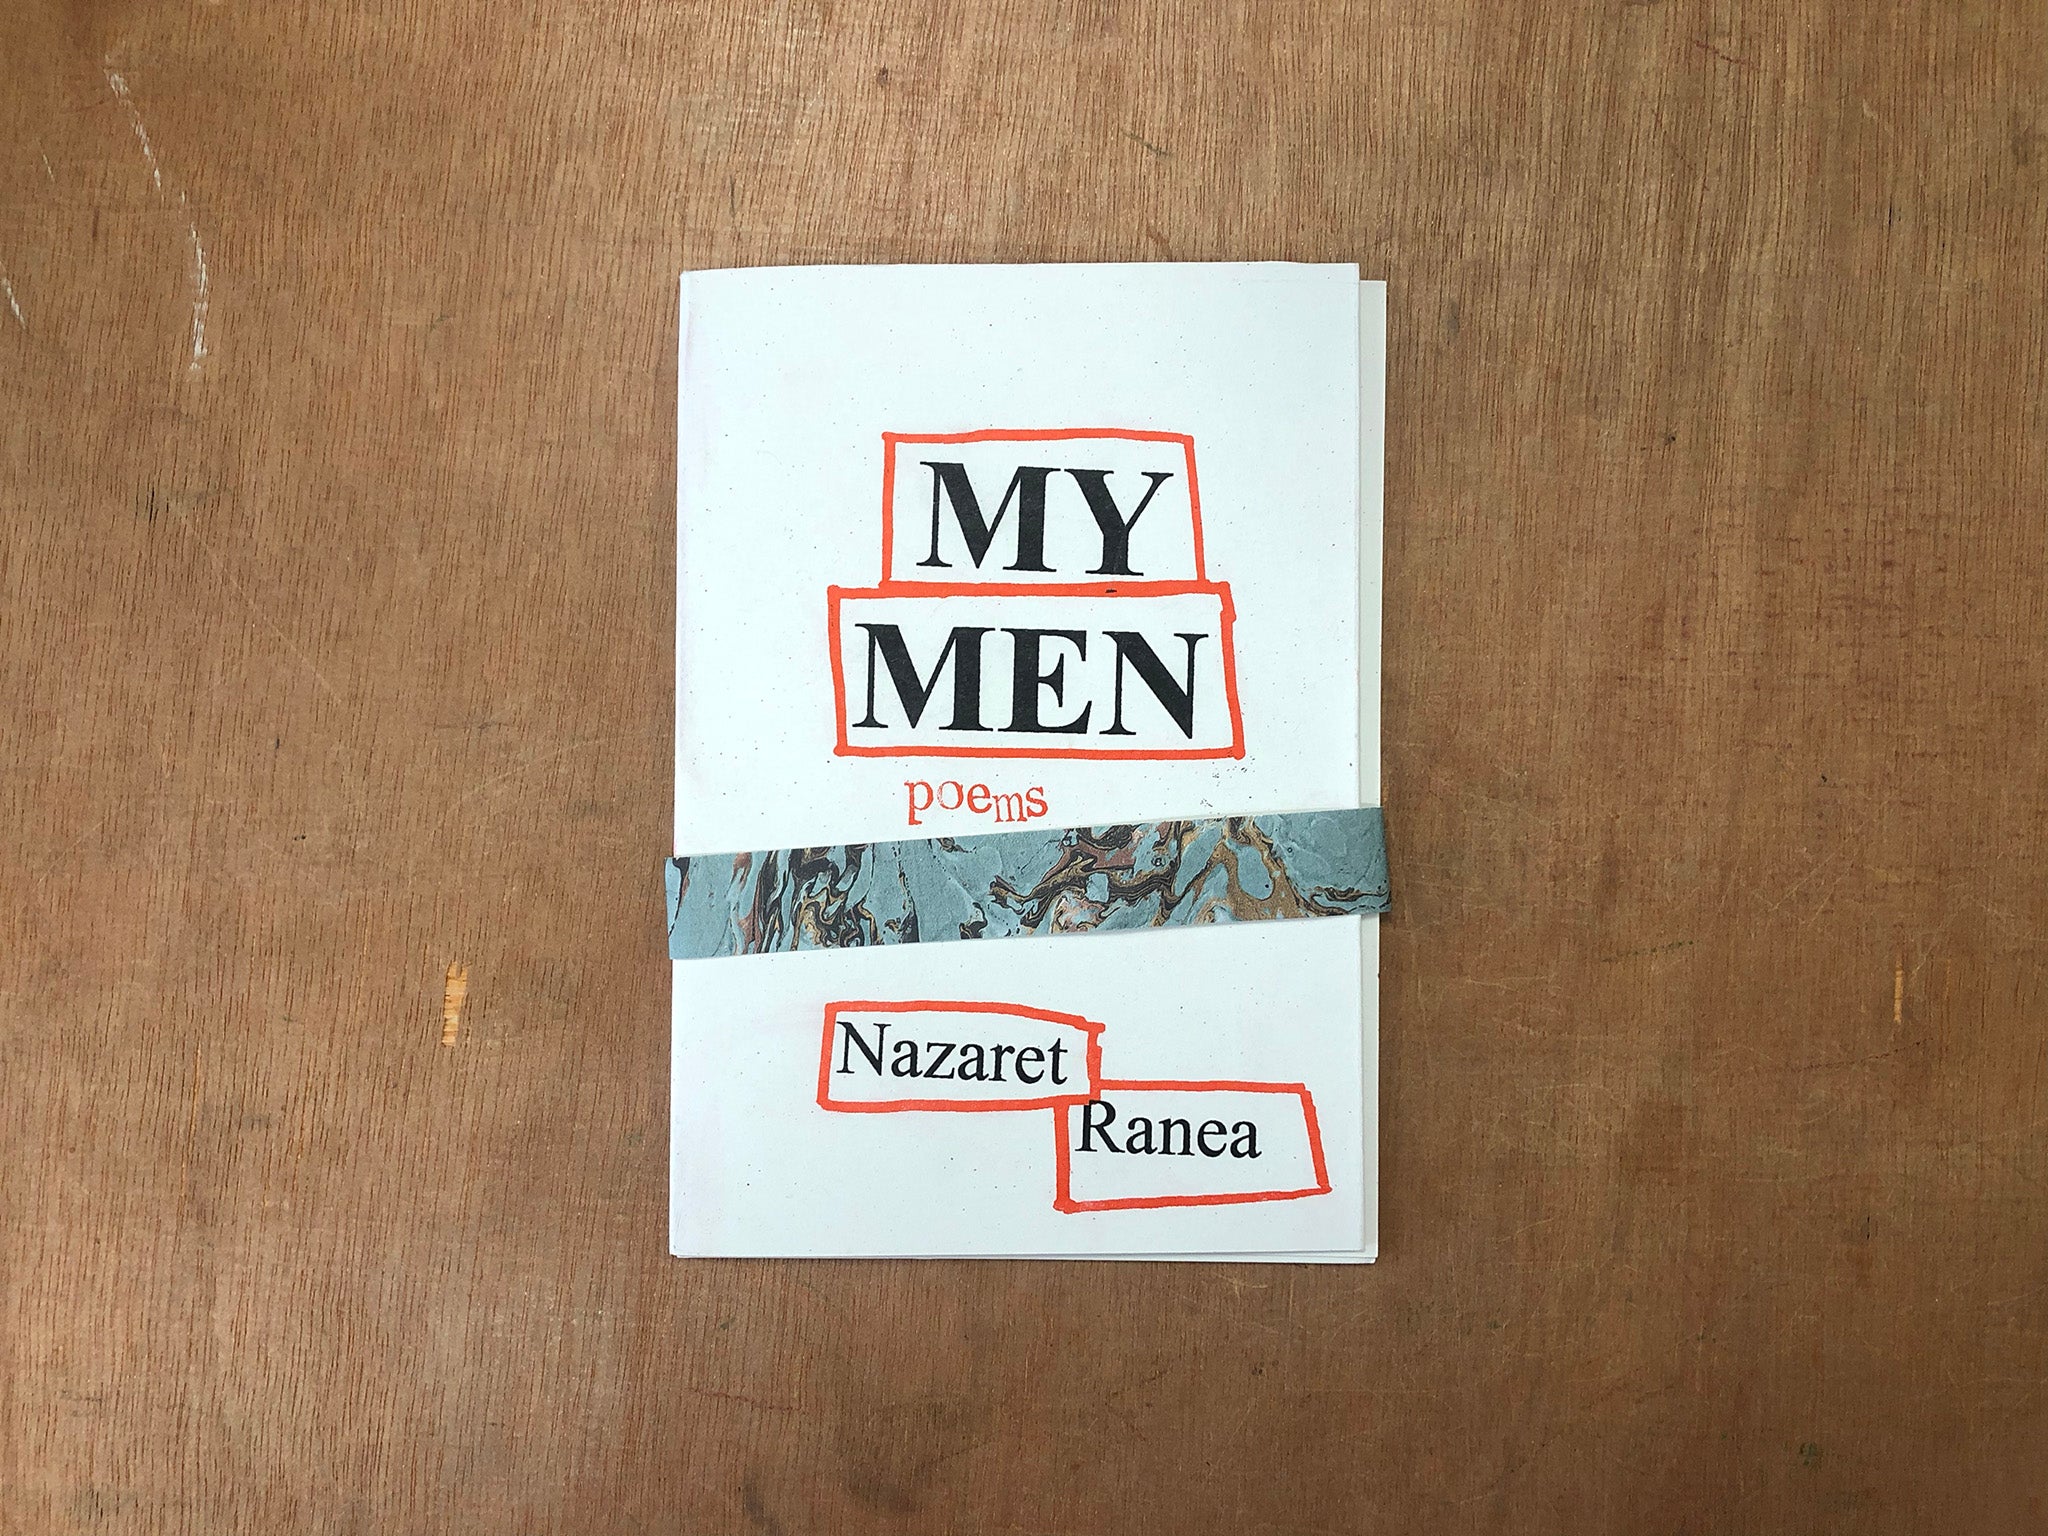 MY MEN: POEMS by Nazaret Ranea